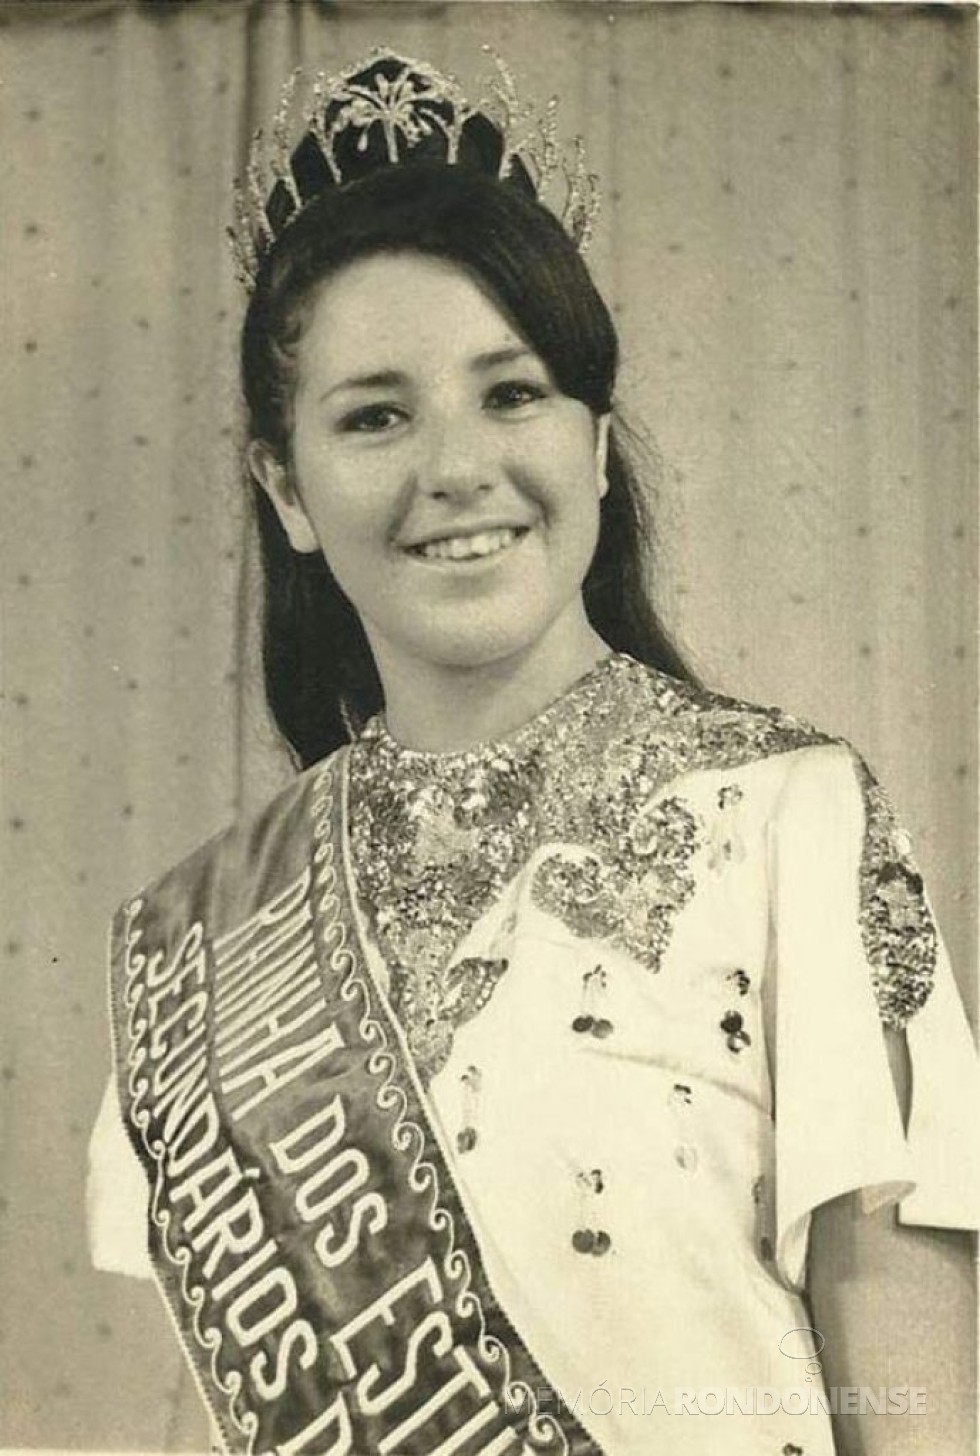 Mais um instantâneo de Miriam Lúcia Fernandes Mazzaferro como Rainha dos estudantes paranaenses de 1968, em evento na cidade paranaense de Cornélio Procopio.
Imagem: Acervo pessoal - FOTO 4 -